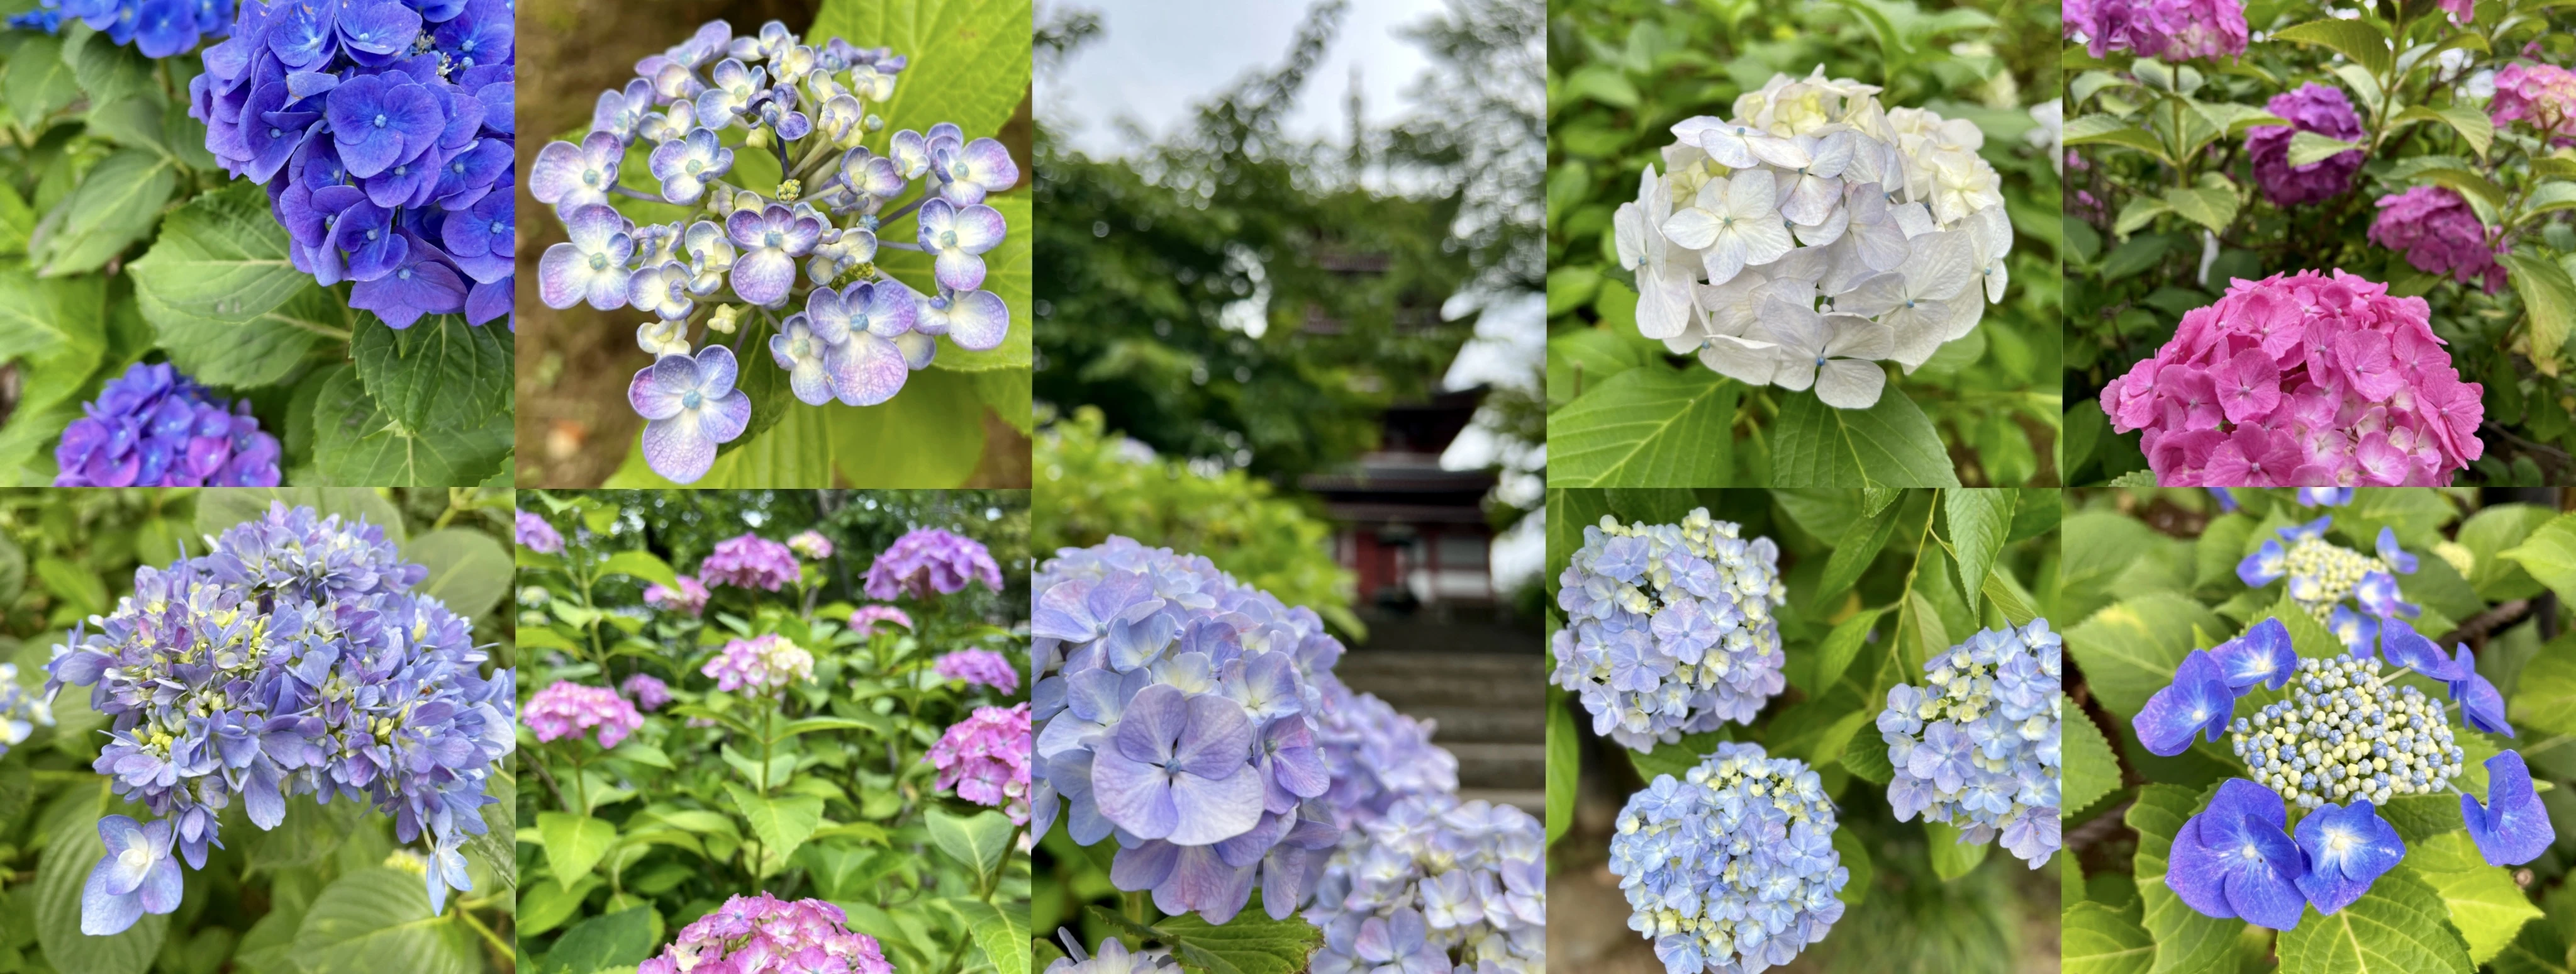 本土寺の紫陽花の写真